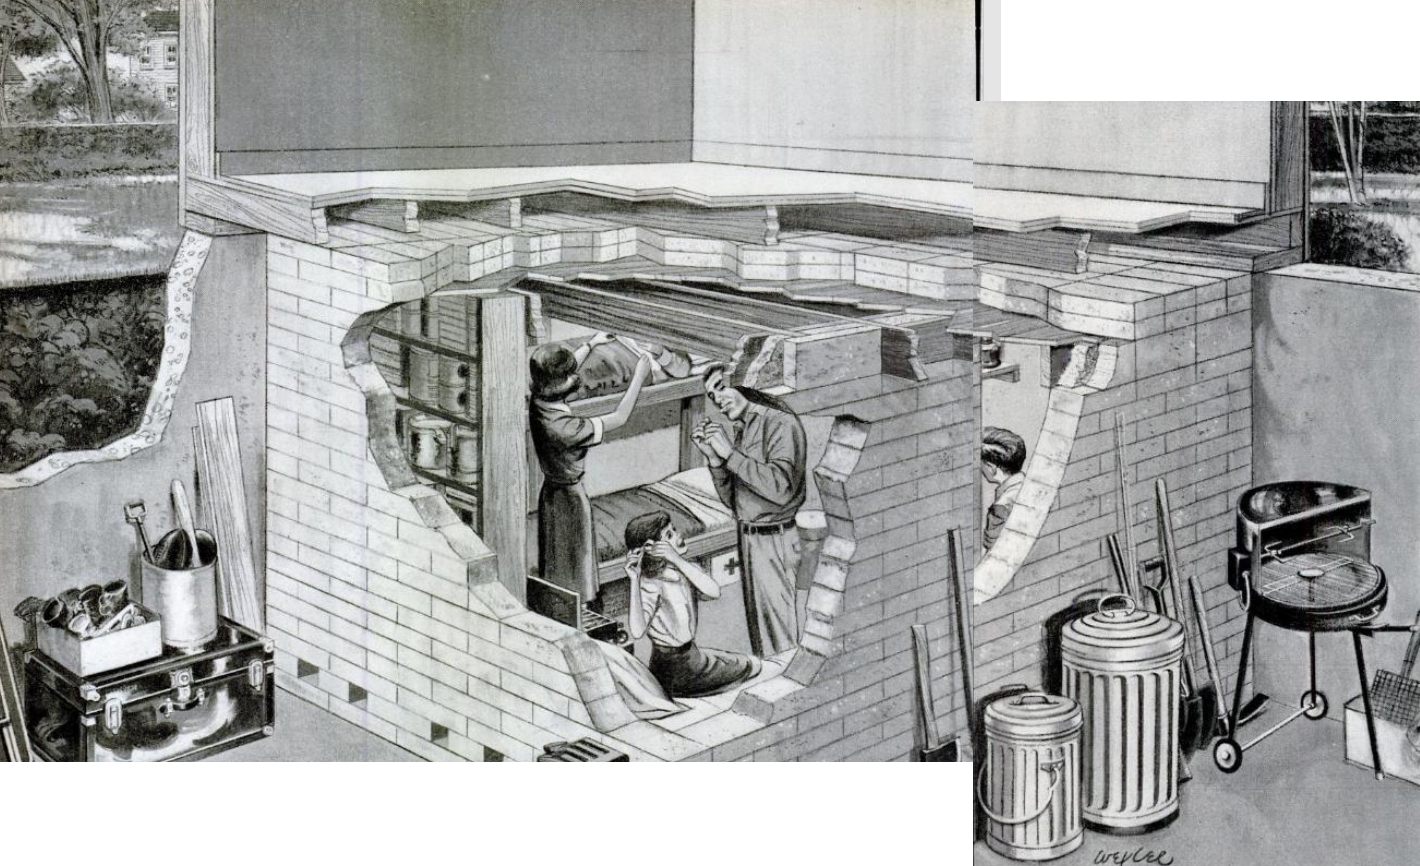 Basement Bomb Shelter, 1961